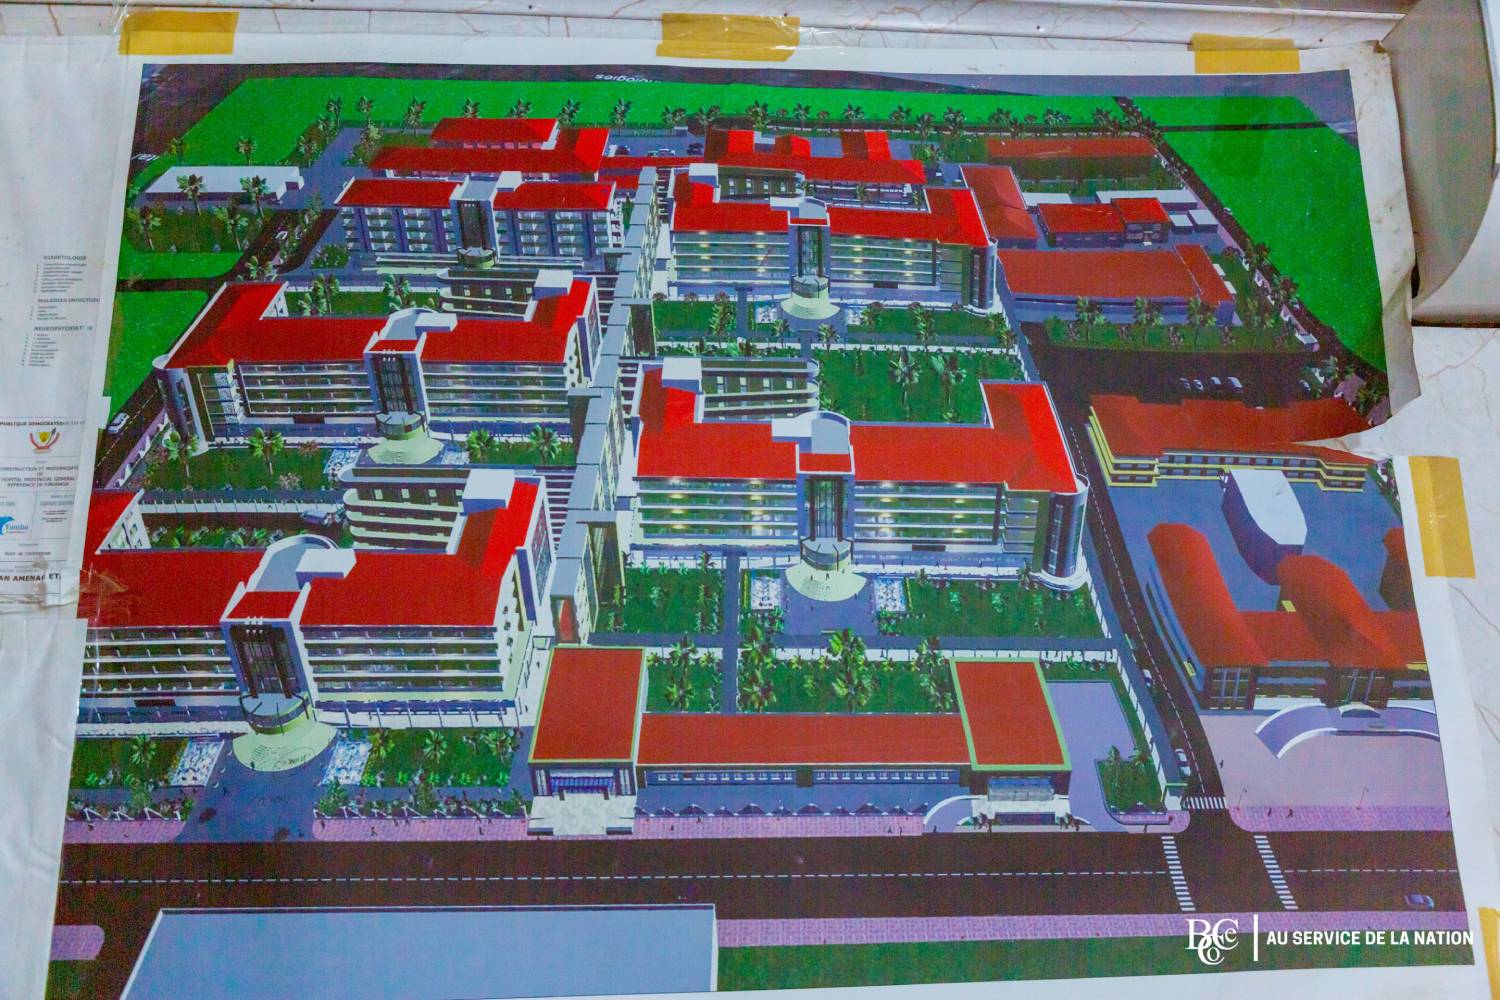 Couverture Santé Universelle _ Samuel Roger Kamba suit de près les travaux la troisième phase du centre hospitalier universitaire renaissance 9